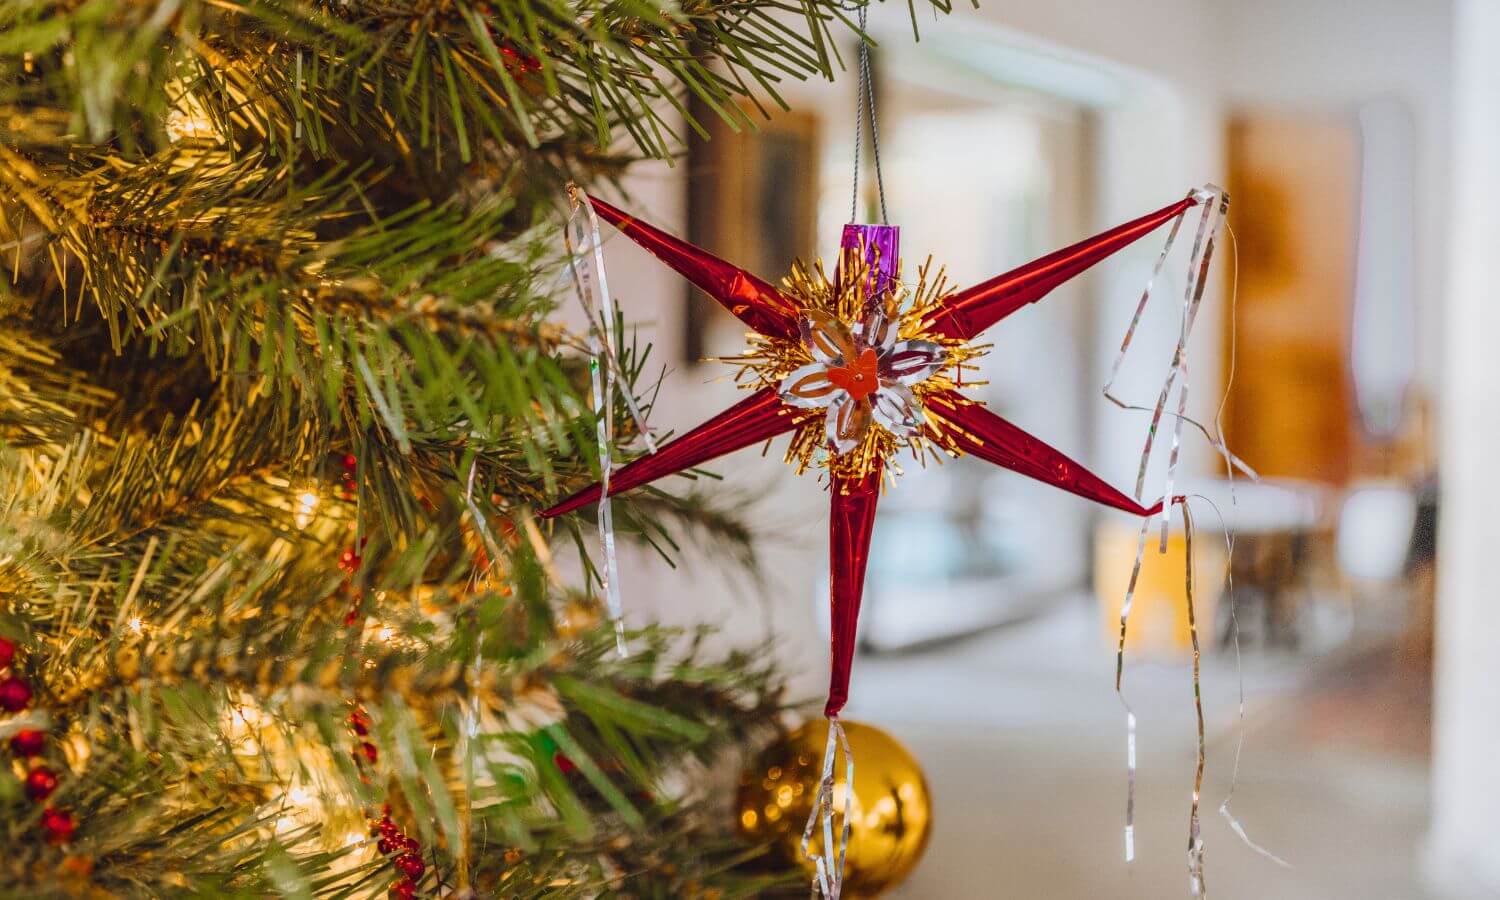 Piñata Christmas Ornament hanging on a Christmas Tree